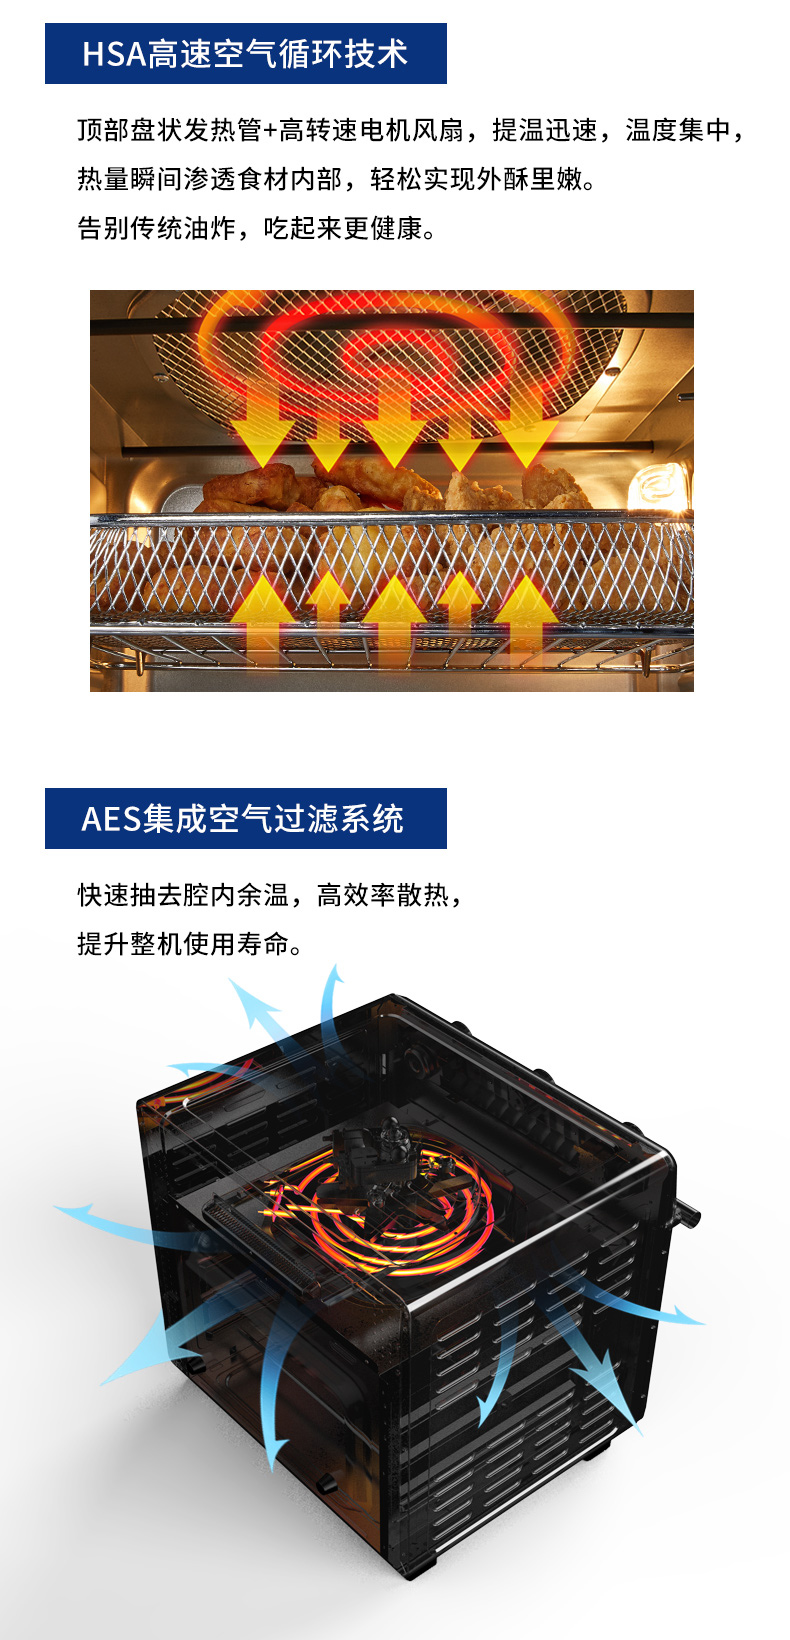 ACA 北美电器 电烤箱 家用空气炸锅 立式烘焙烤箱 28L EAF22A